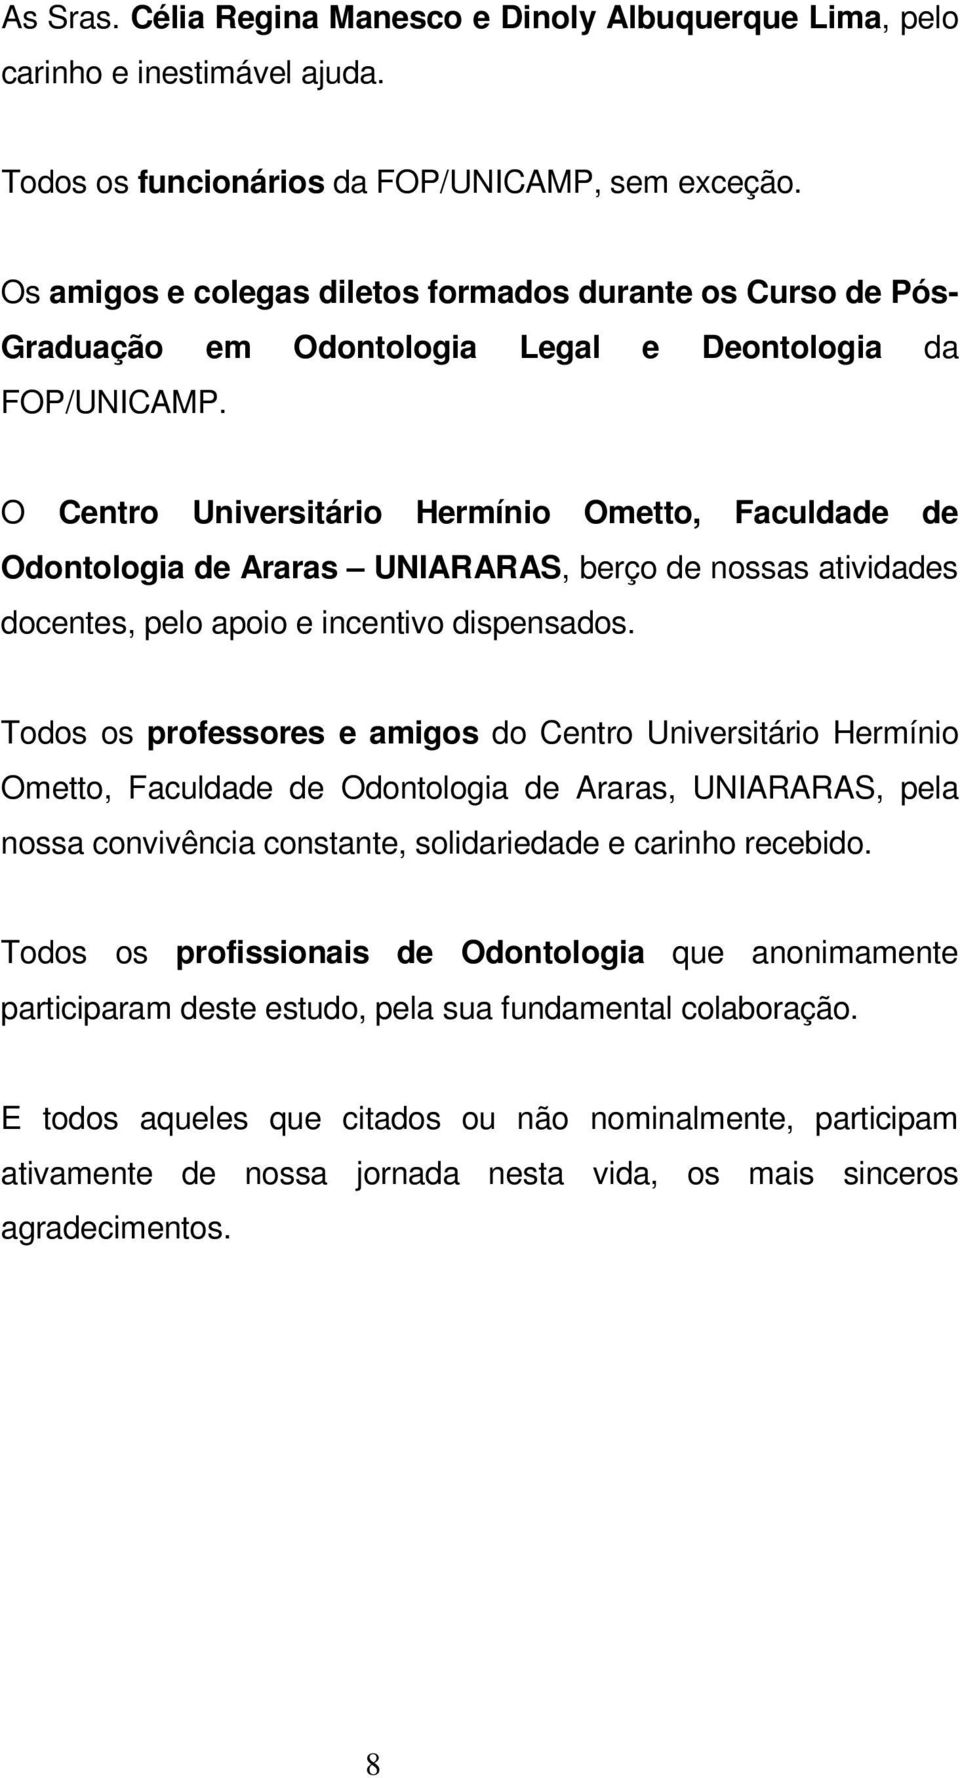 O Centro Universitário Hermínio Ometto, Faculdade de Odontologia de Araras UNIARARAS, berço de nossas atividades docentes, pelo apoio e incentivo dispensados.